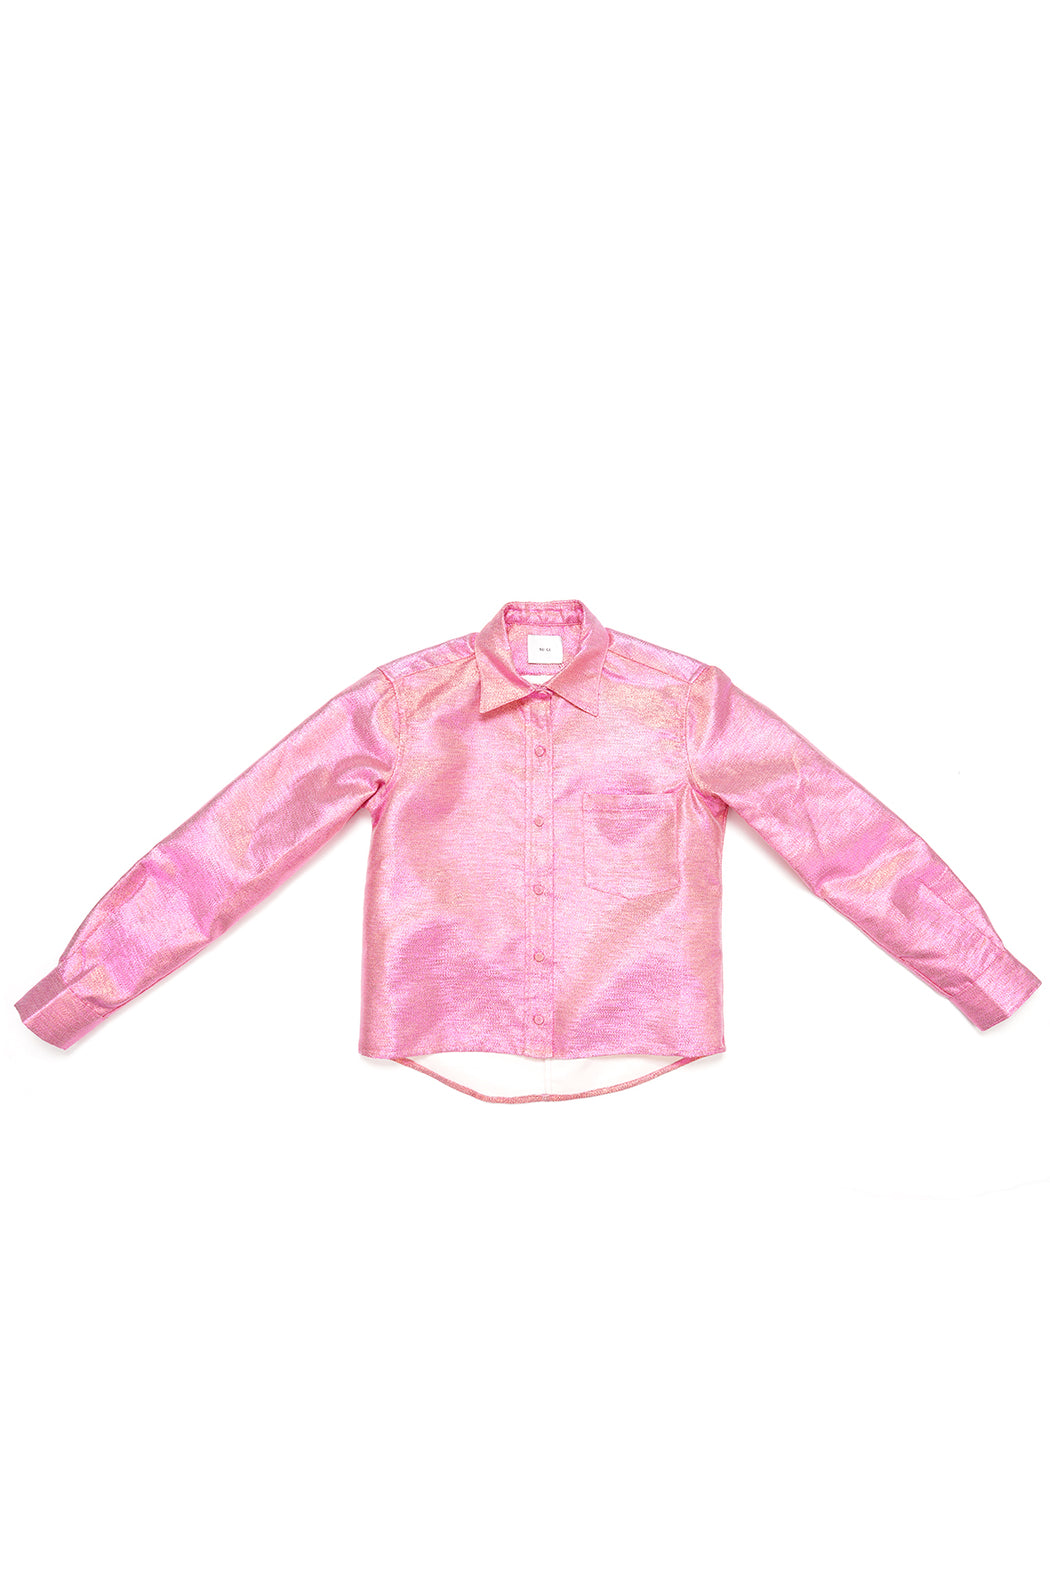 Glitter Shirt - Pink